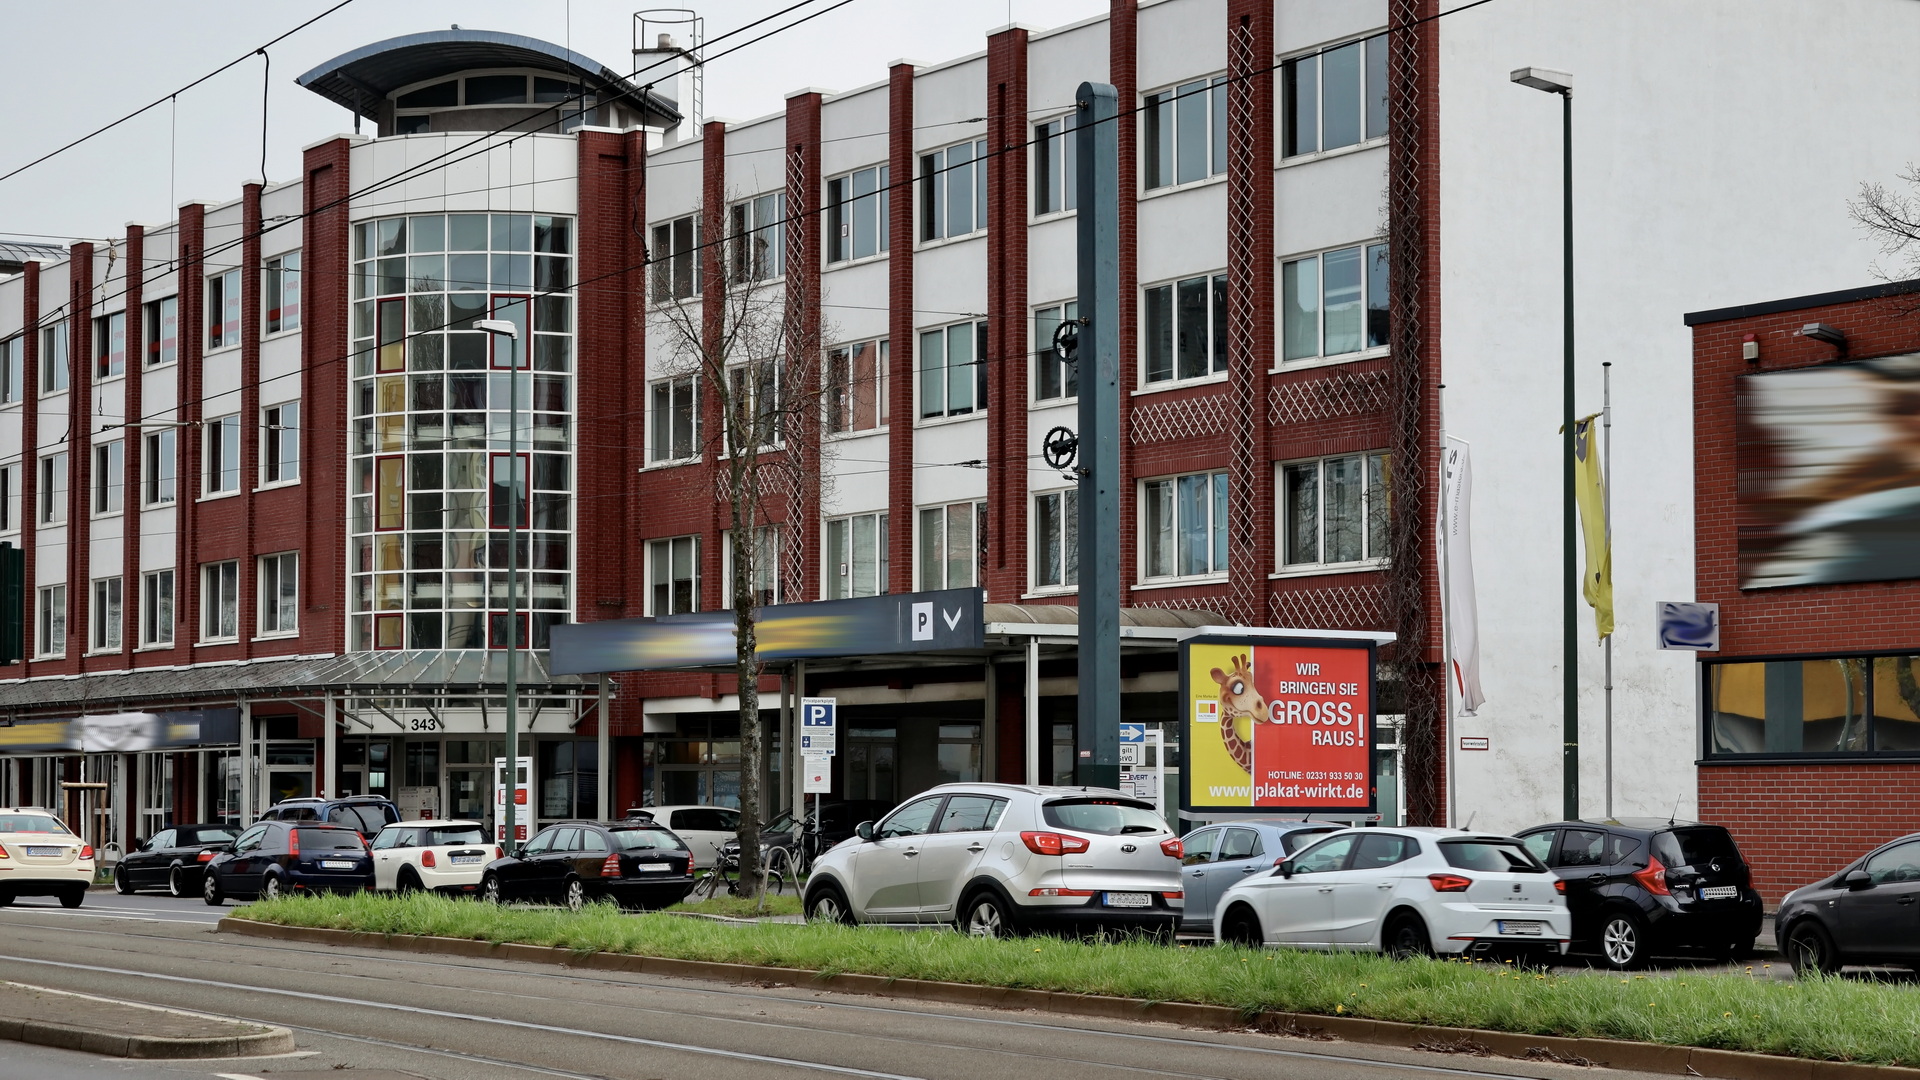 Unser Standort des Monats Mai 2021 – Düsseldorf, Erkrather Strasse